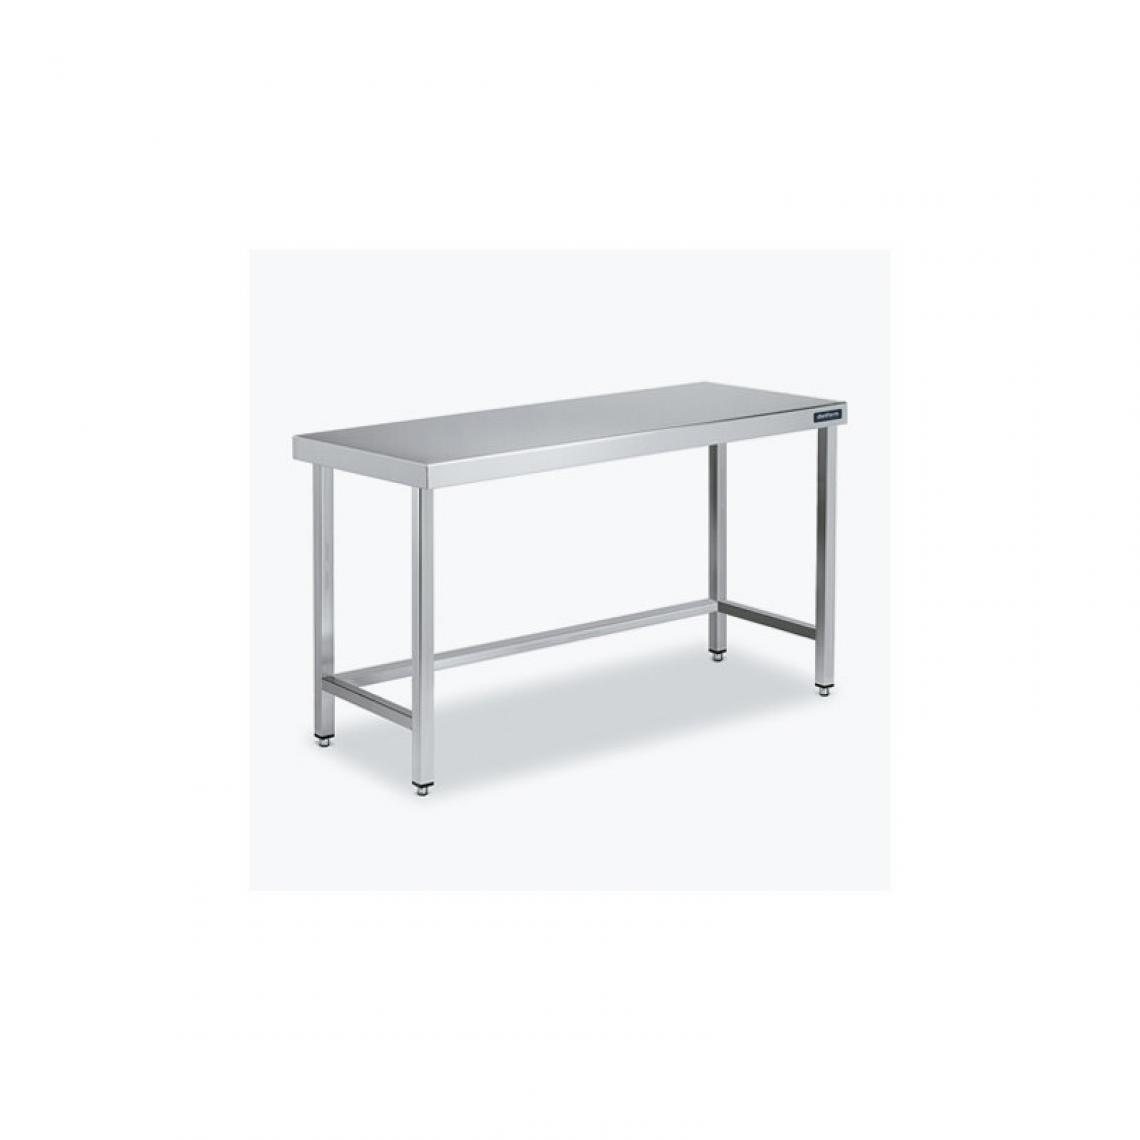 DISTFORM - Table Centrale 600x700 avec Renforts - Distform - Inox 18/10900x700x850mm - Tables à manger